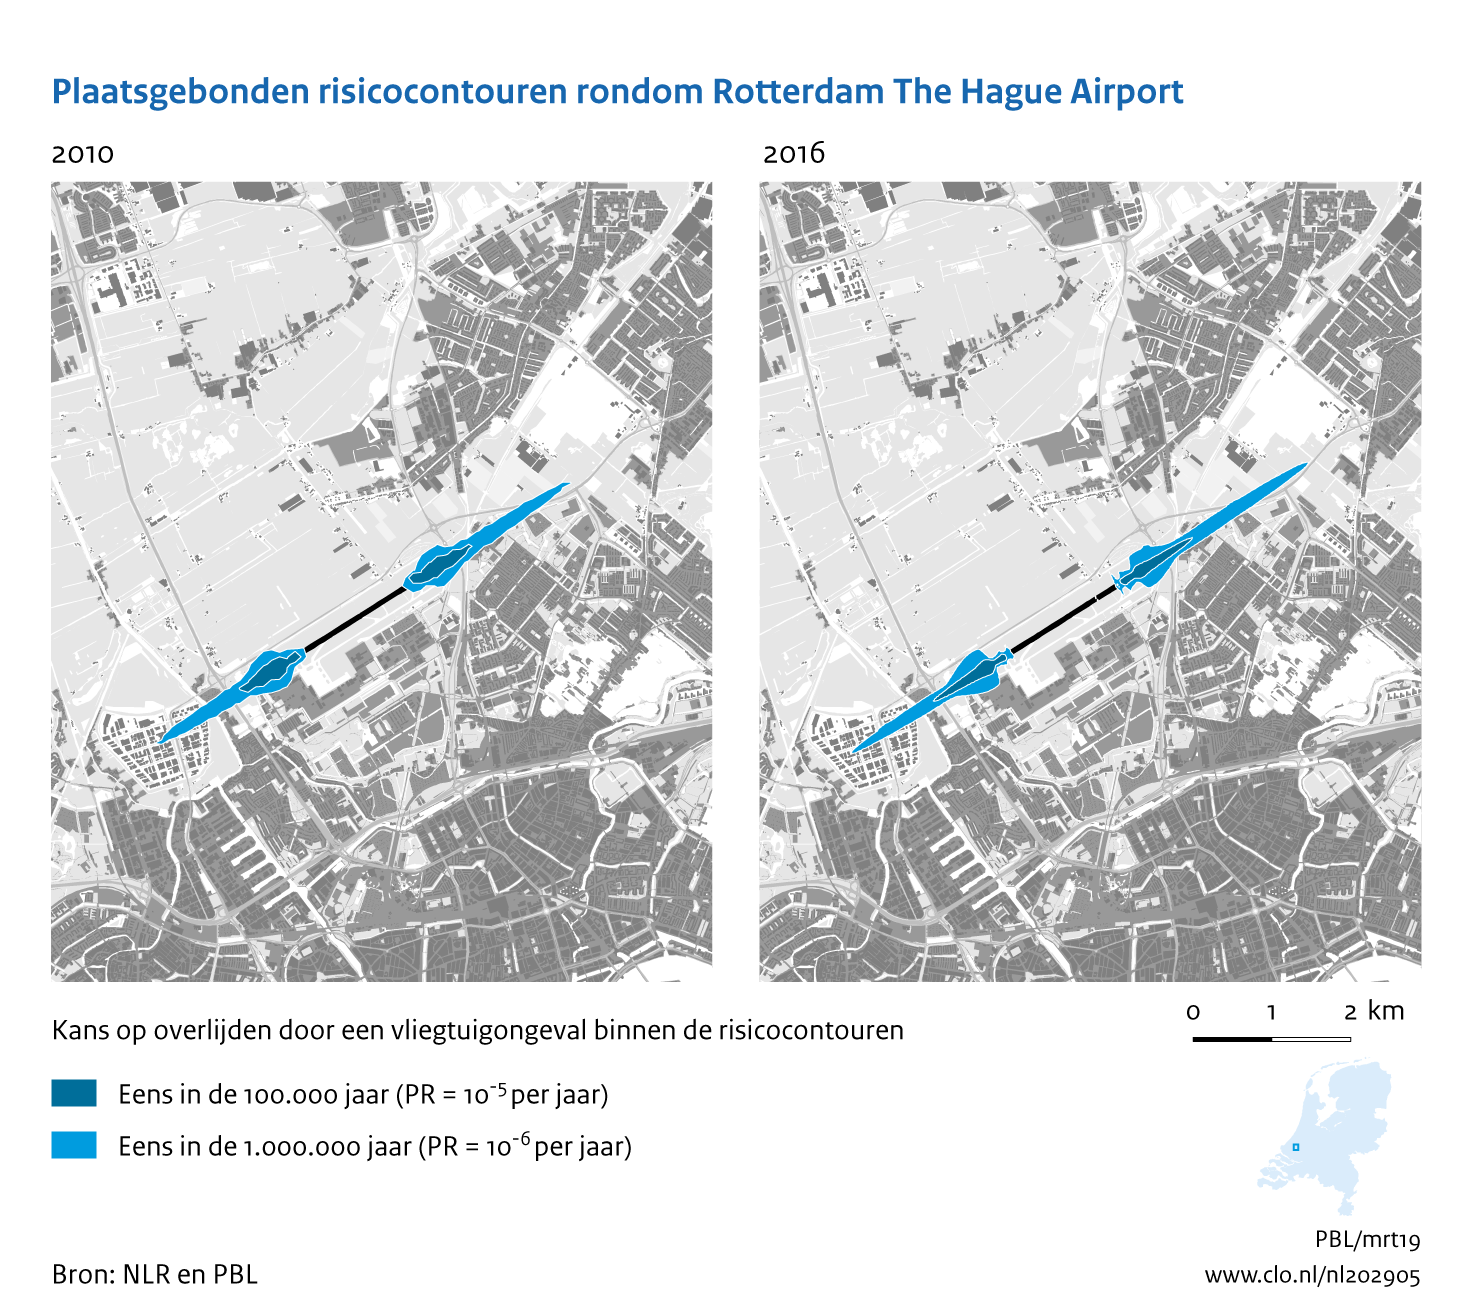 Figuur Plaatsgebonden risicocontouren rondom Rotterdam The Hague  Airport, 2010-2016. In de rest van de tekst wordt deze figuur uitgebreider uitgelegd.